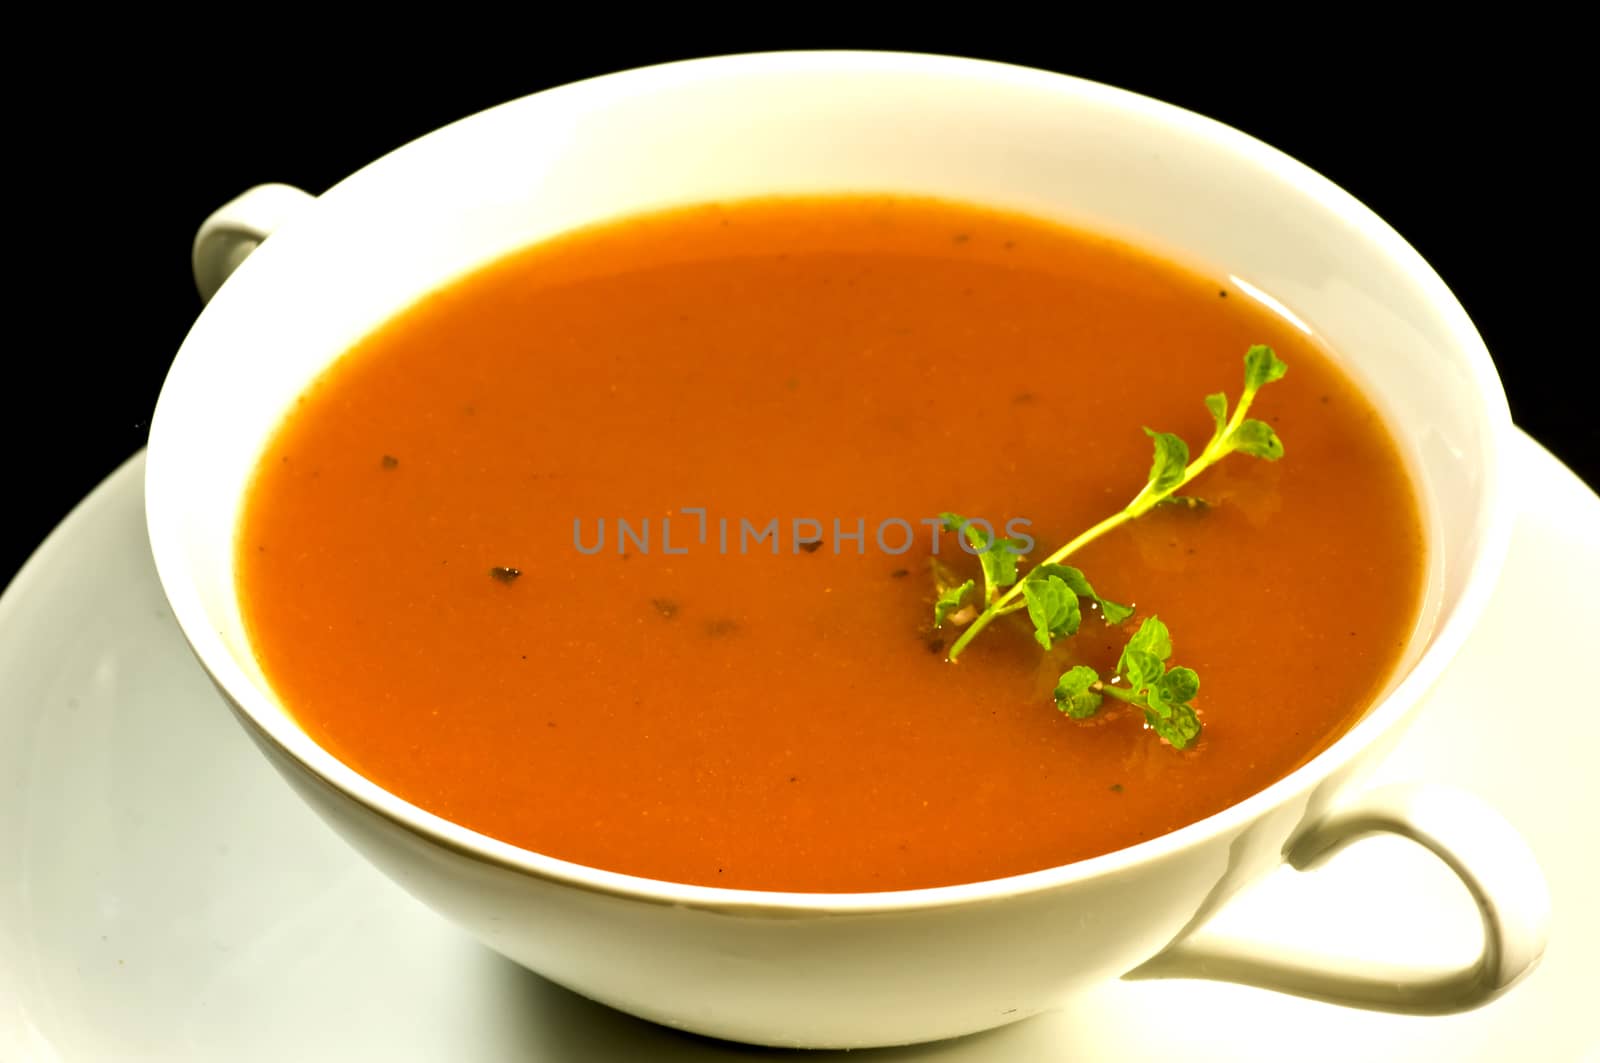 Tomato soup by Jochen